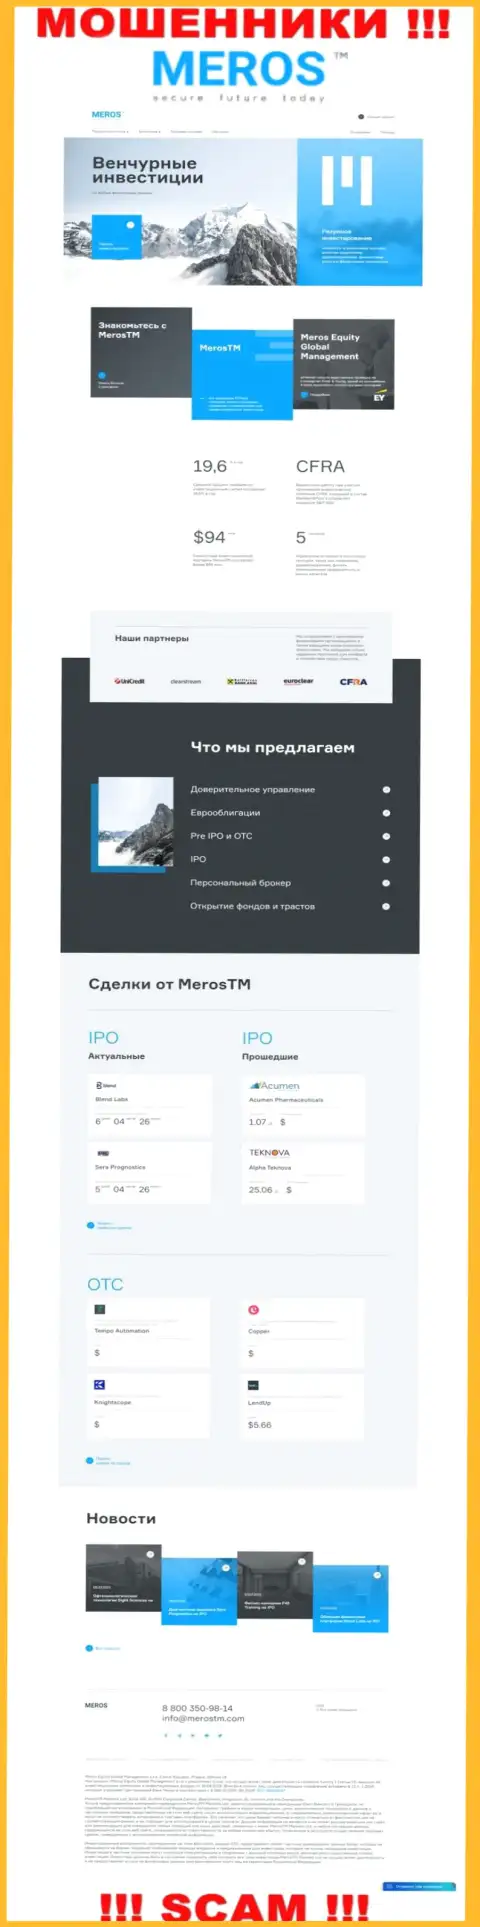 Обзор официального веб-сервиса мошенников Мерос ТМ